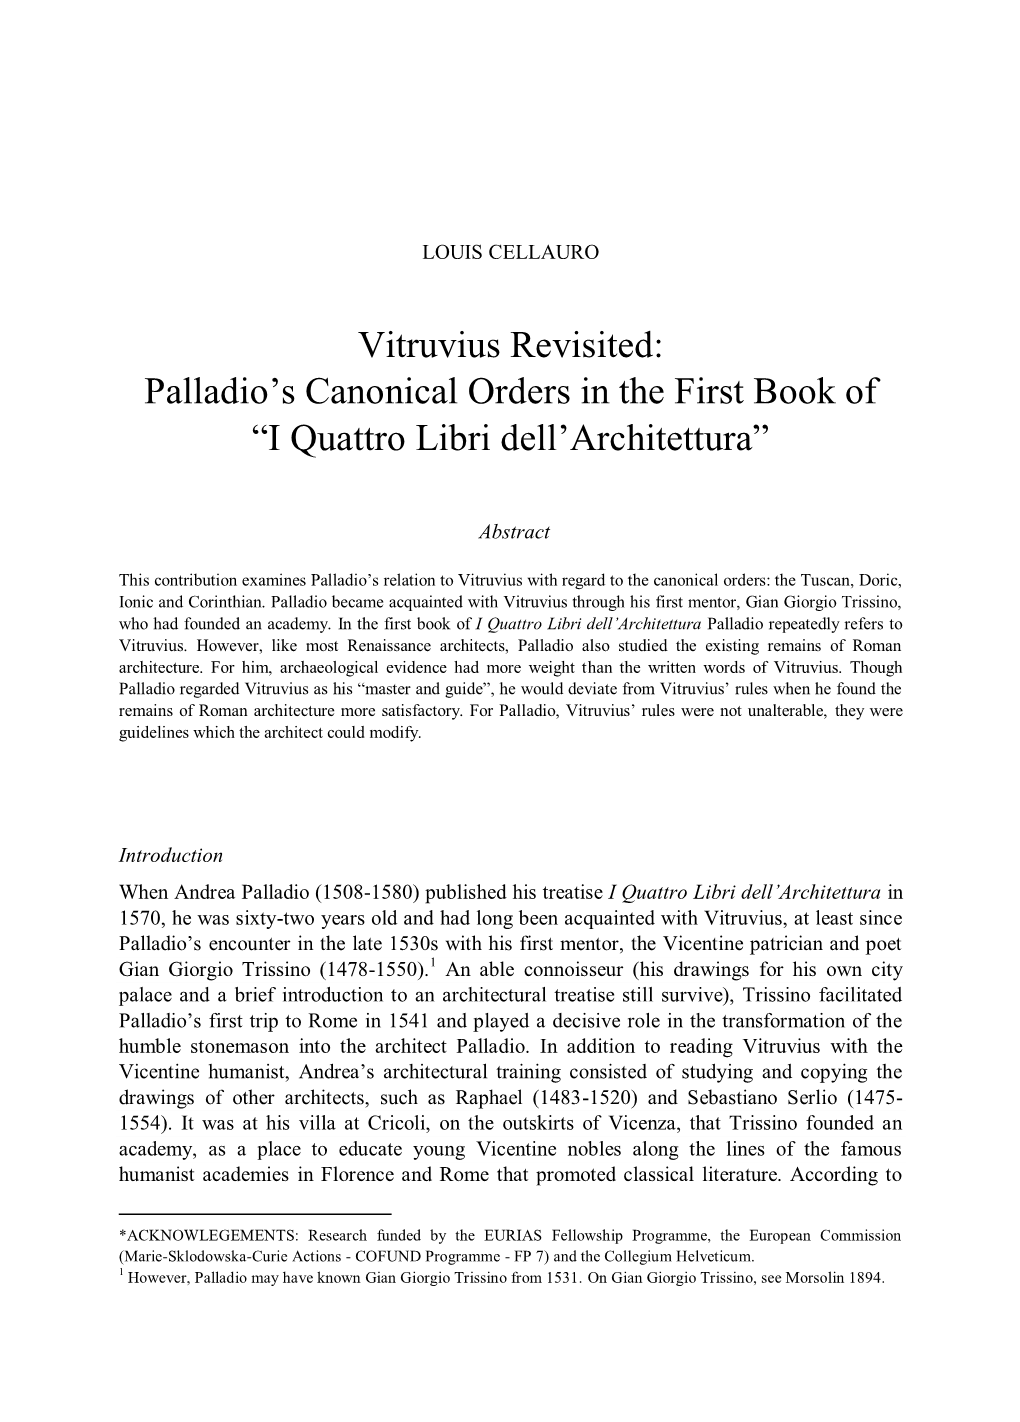 Vitruvius Revisited: Palladio’S Canonical Orders in the First Book of “I Quattro Libri Dell’Architettura”